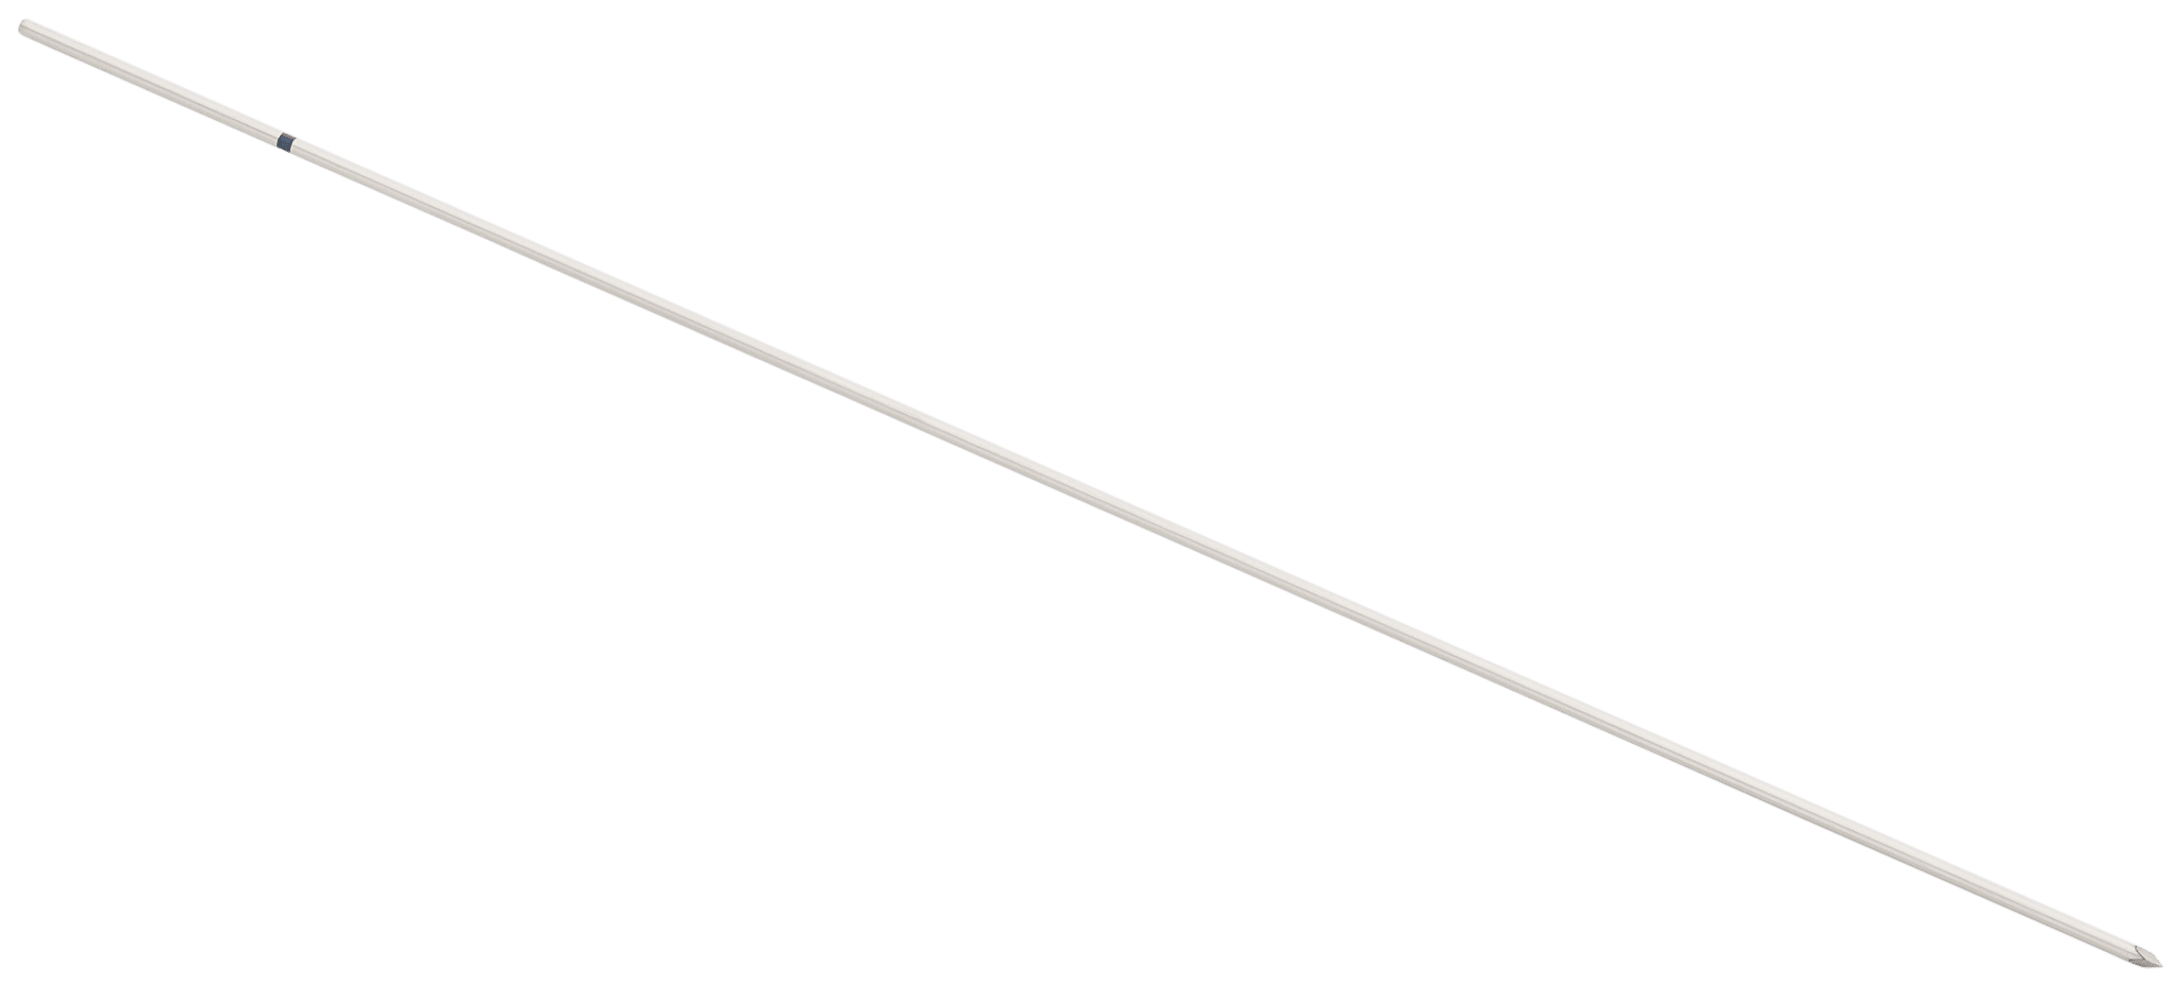 Nitinol Guidewire, Trocar Tip, with Laser Line, 0.86 mm